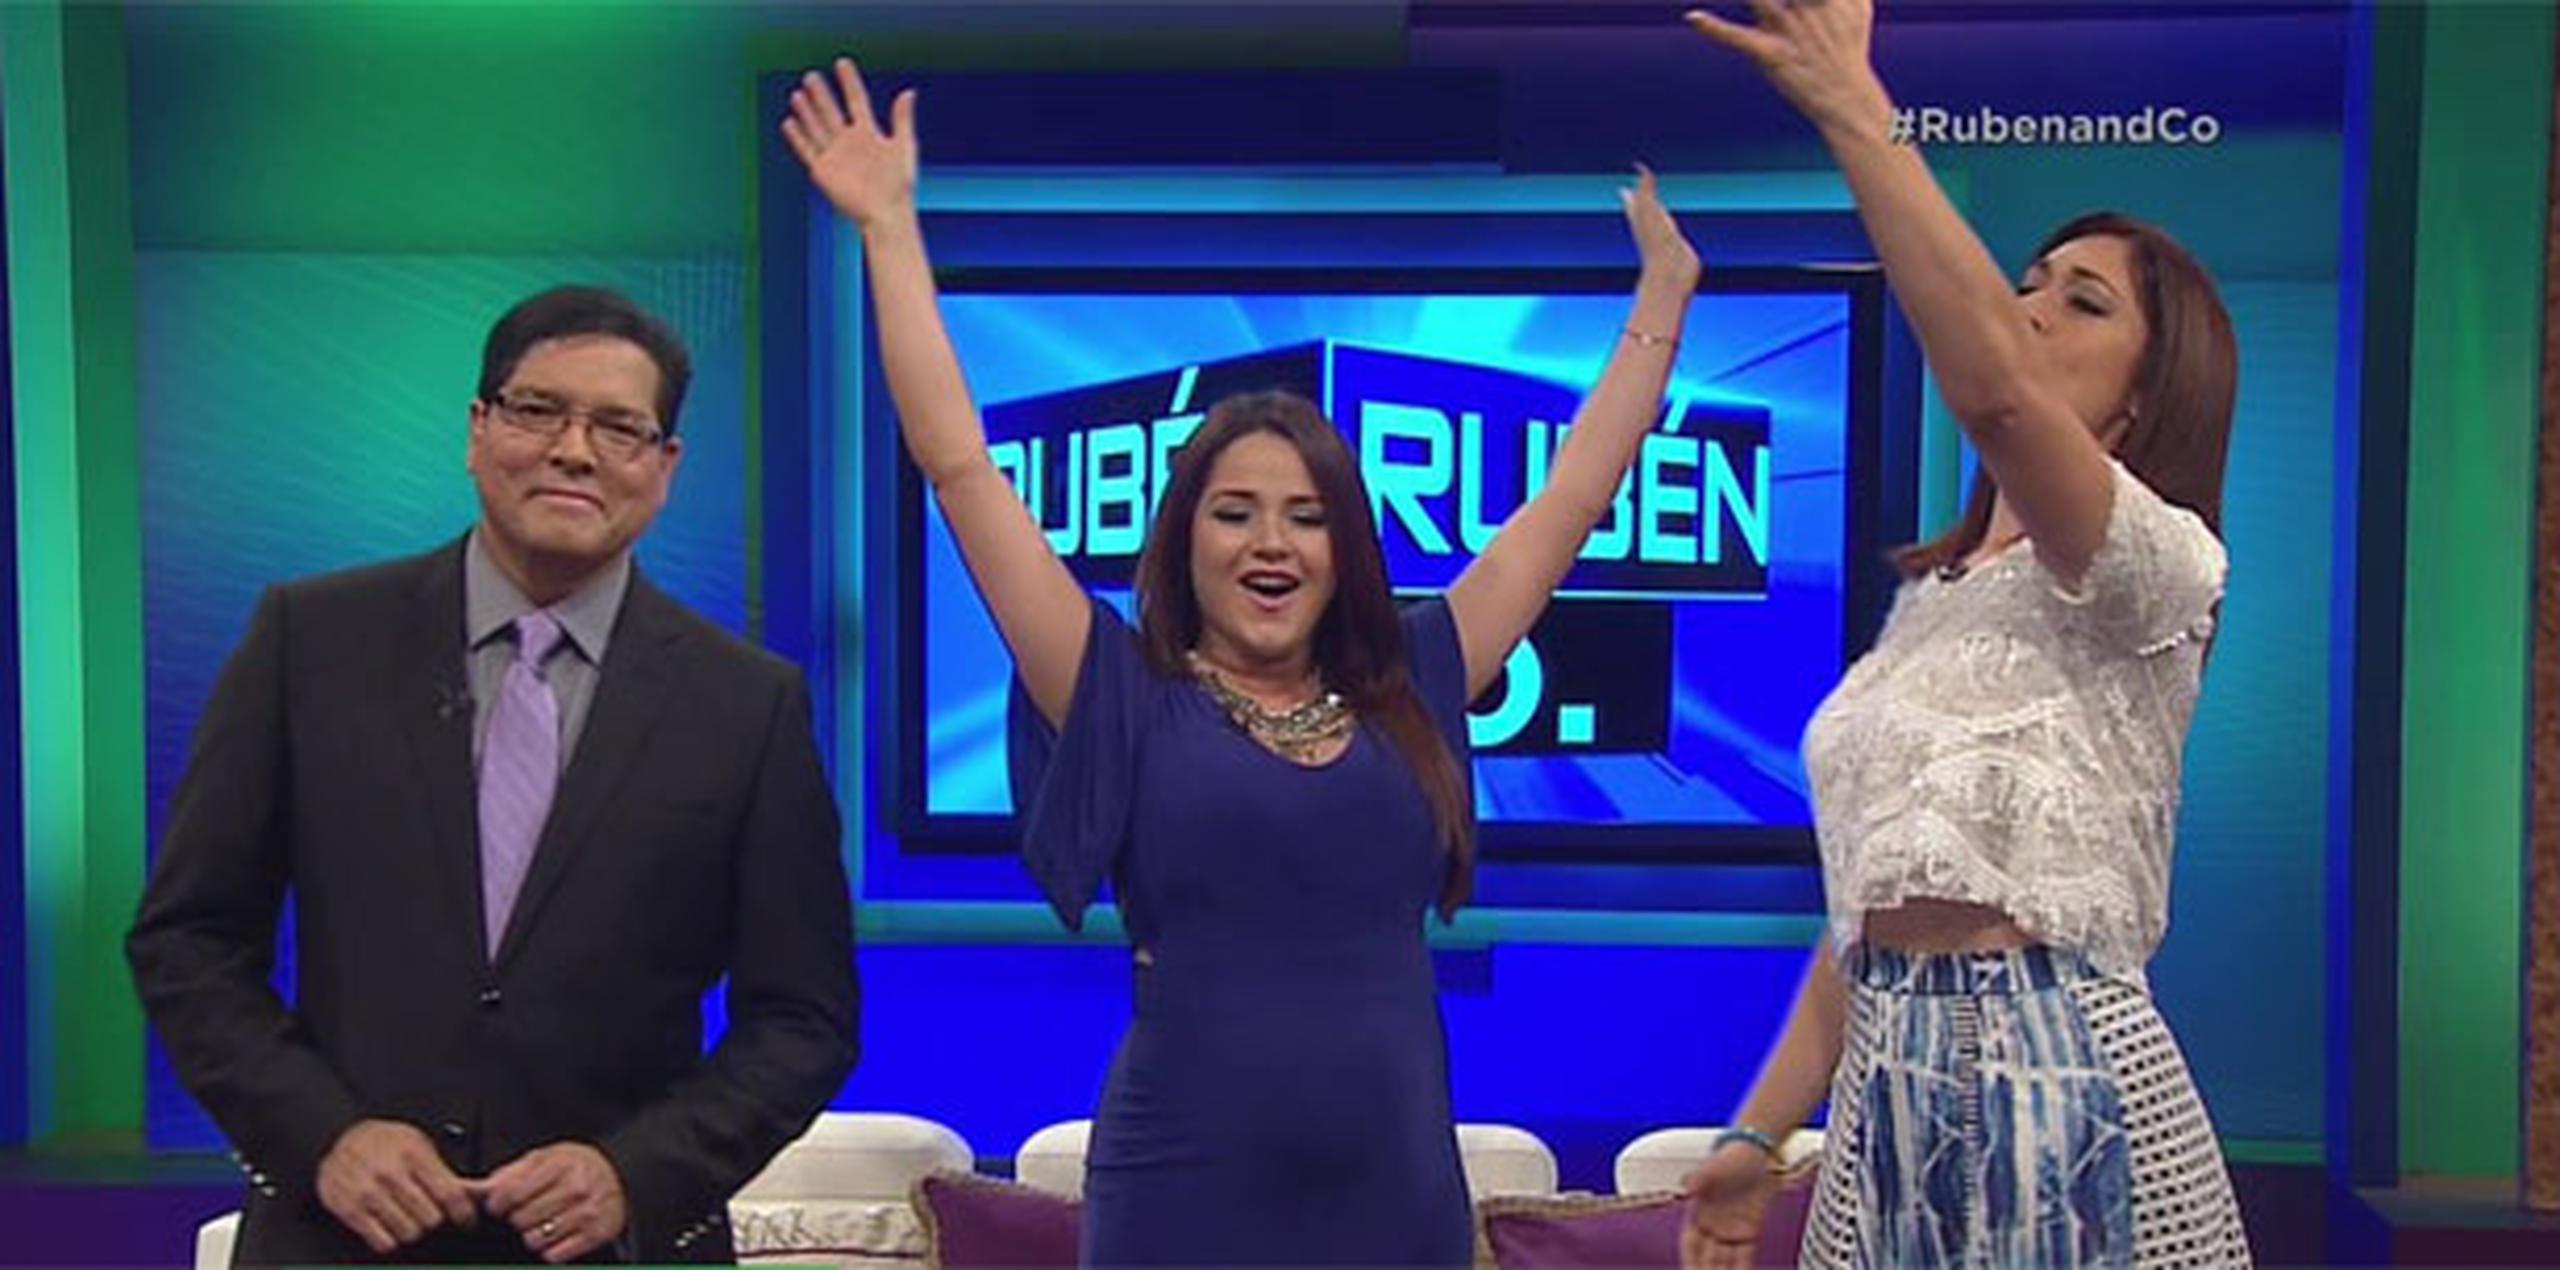 El anunció del cambio de horario de "Rubén & Co." se realizó durante el programa del viernes.